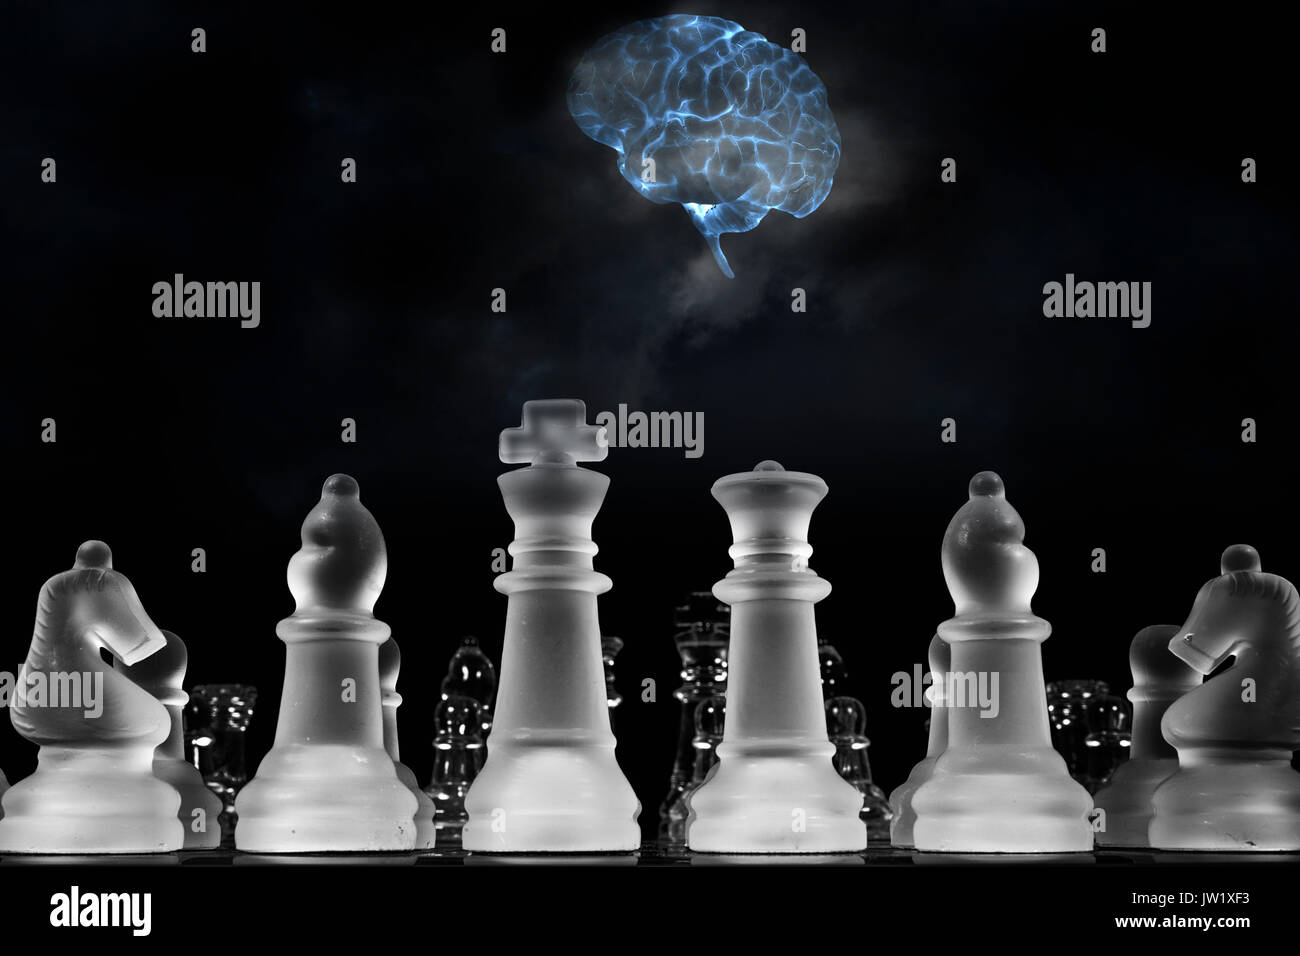 Cerveau humain jouant un jeu d'échecs, l'intelligence artificielle Banque D'Images